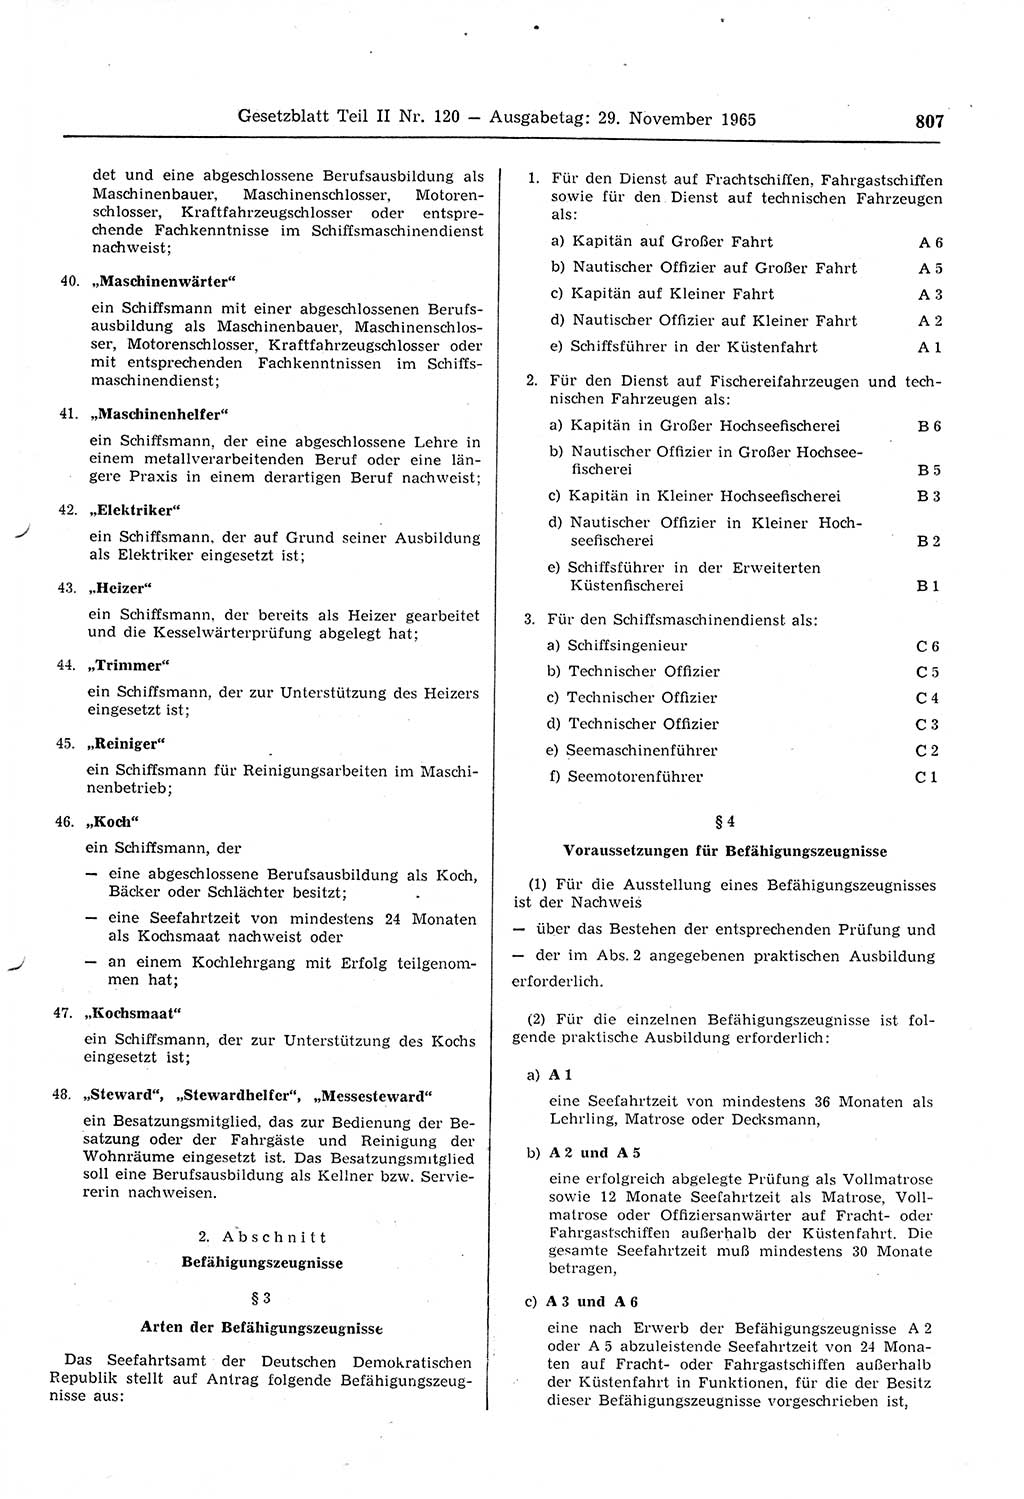 Gesetzblatt (GBl.) der Deutschen Demokratischen Republik (DDR) Teil ⅠⅠ 1965, Seite 807 (GBl. DDR ⅠⅠ 1965, S. 807)